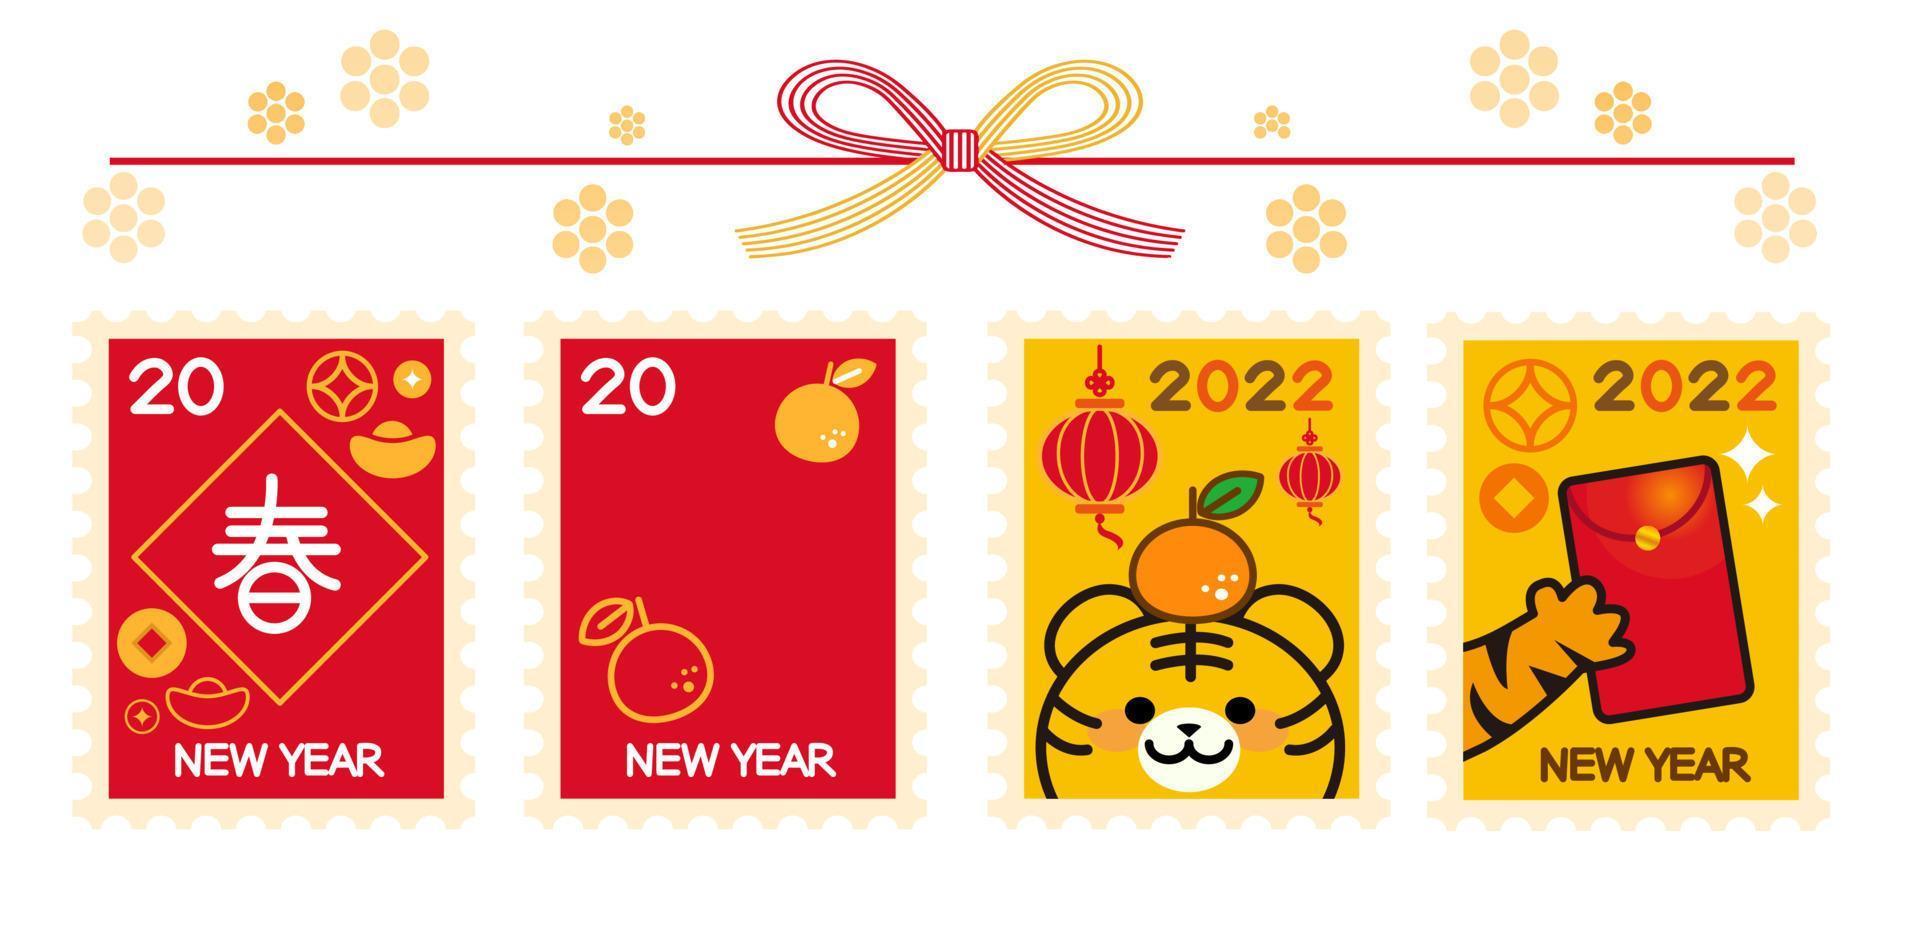 illustratie set van jaar de tijger in Chinese karakters geschreven op de postzegel en de ed envelop vector